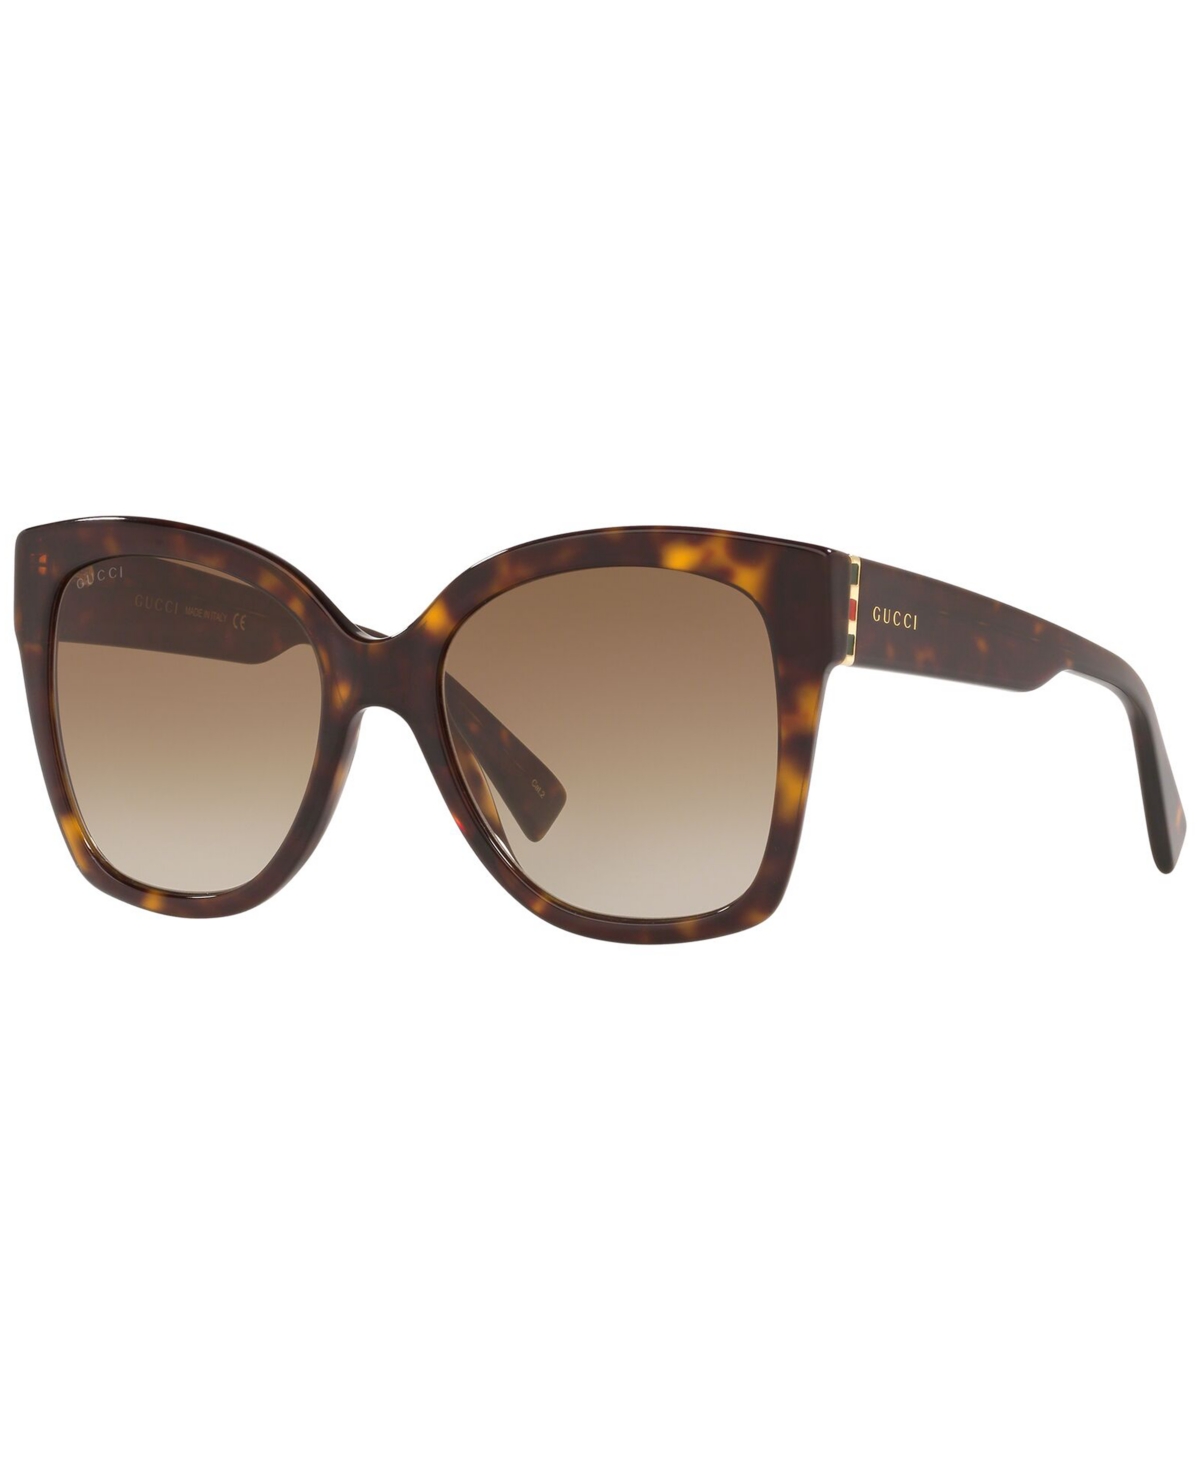 Gucci Sunglasses, Gg0459s In Tortoise,brown